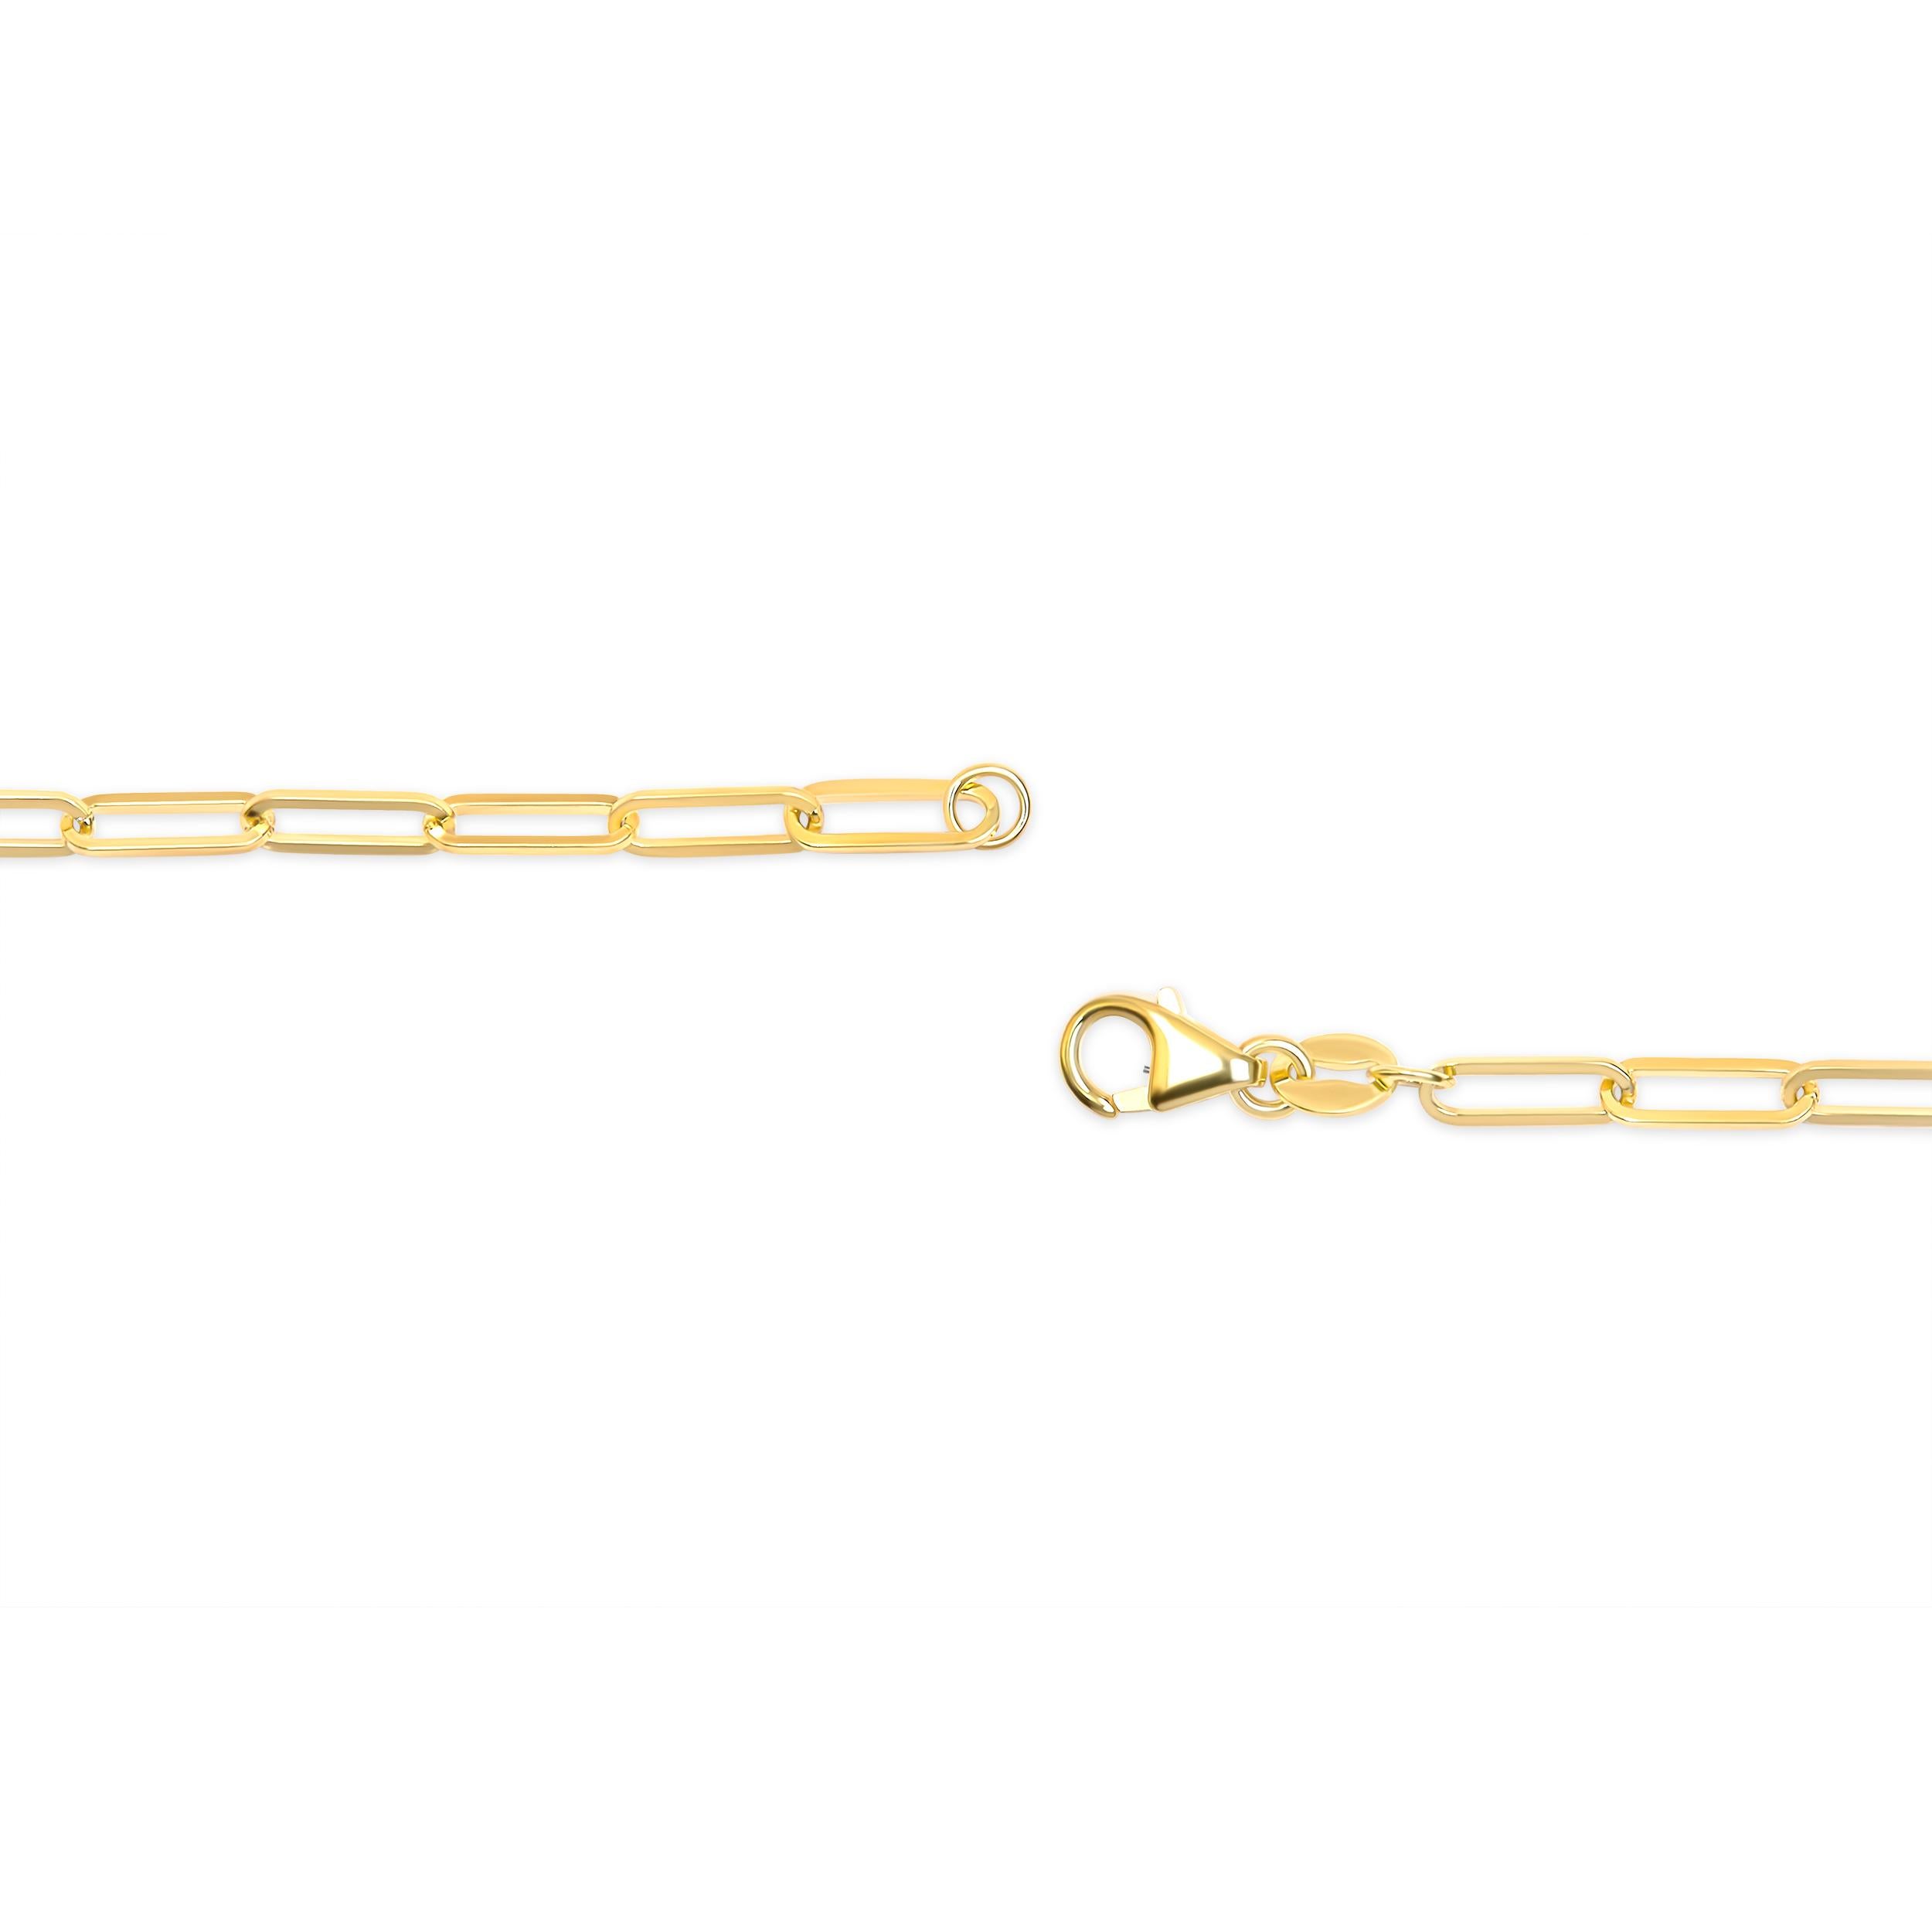 Diese exquisite 14 Karat Gelbgold-Büroklammerkette ist ein zeitloses Meisterwerk, das durch seine Eleganz und Vielseitigkeit besticht. Diese mit viel Liebe zum Detail gefertigte Unisex-Kette mit einer Breite von 2,5 mm und einer Länge von 18 Zoll